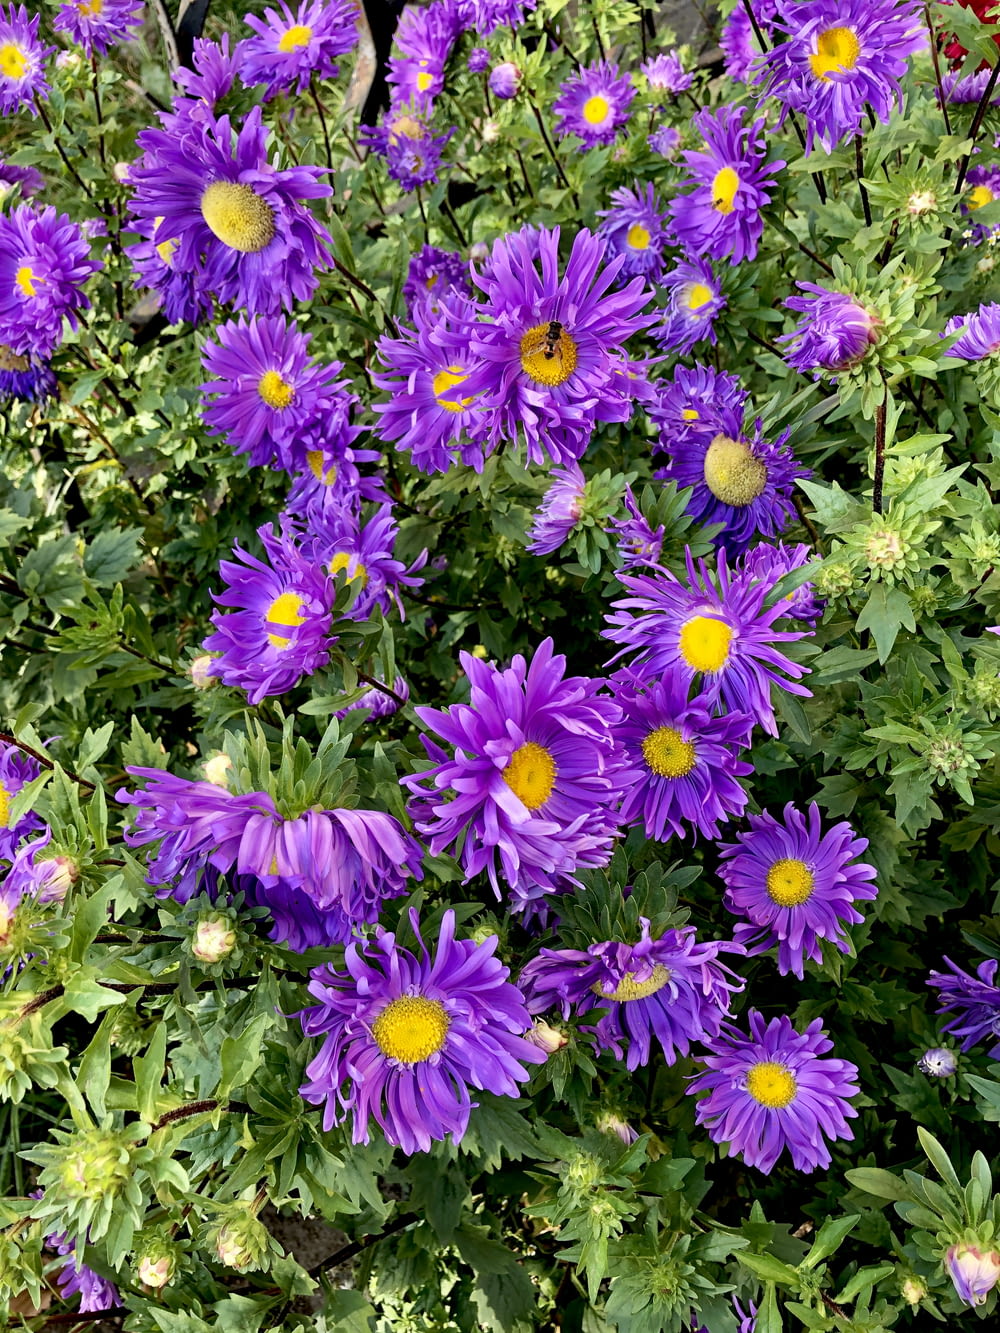 purple flowers in macro lens